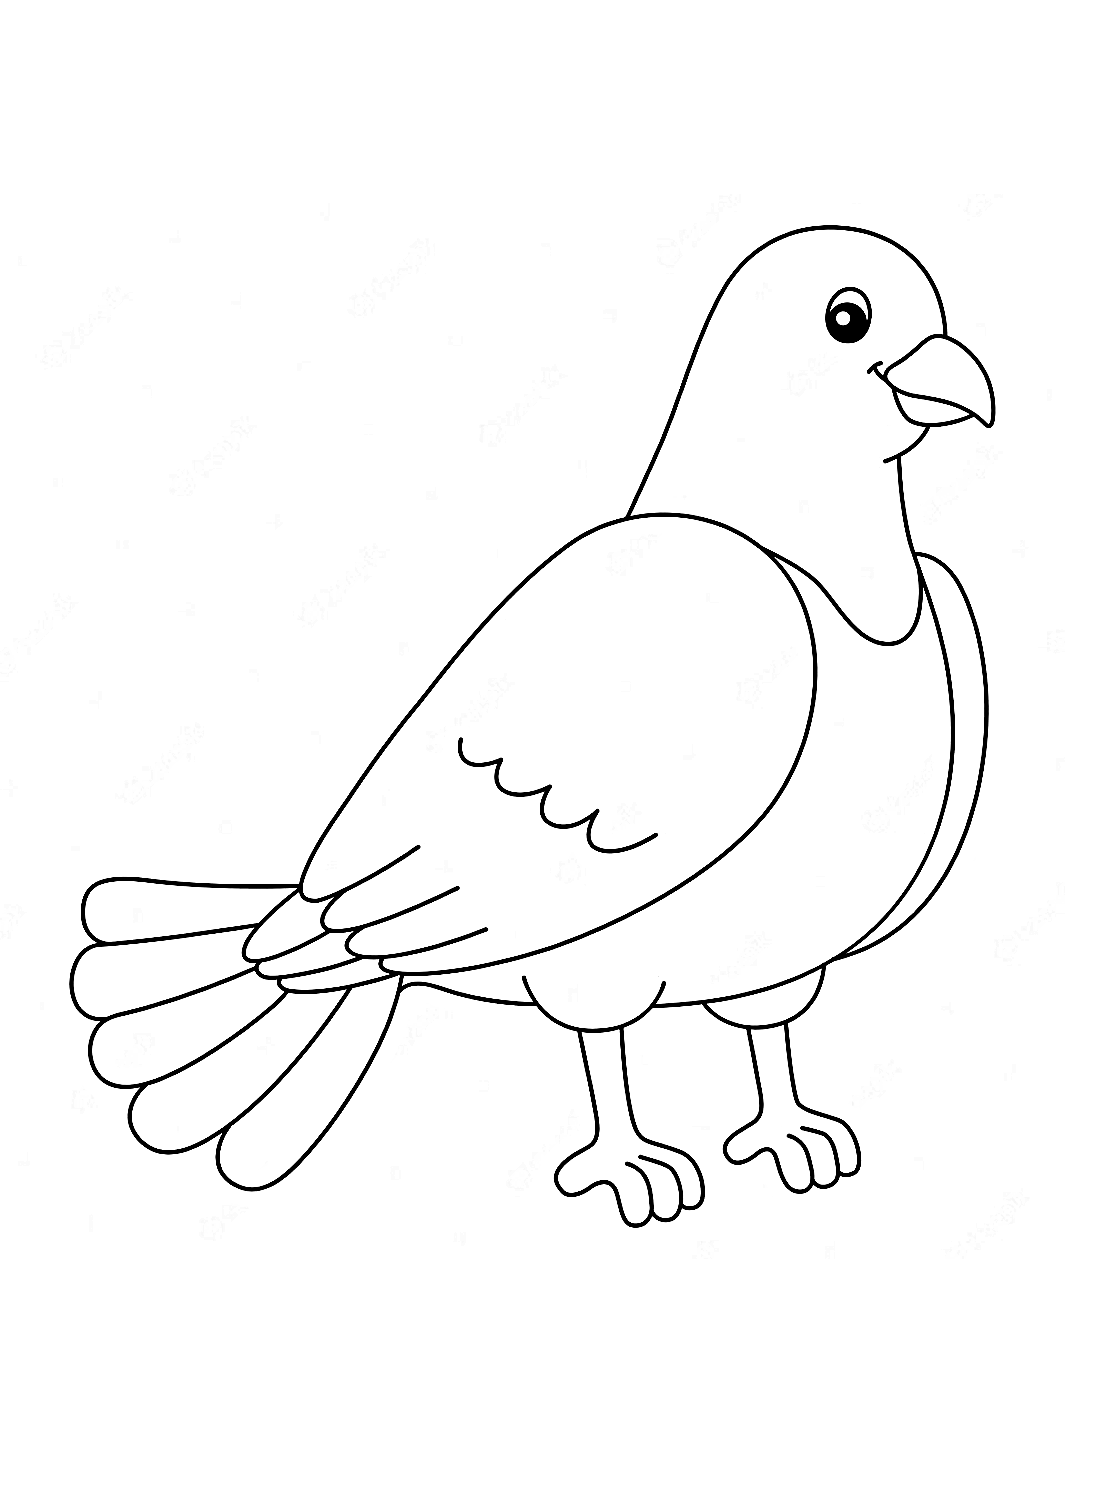 Een dikke duif van Doves